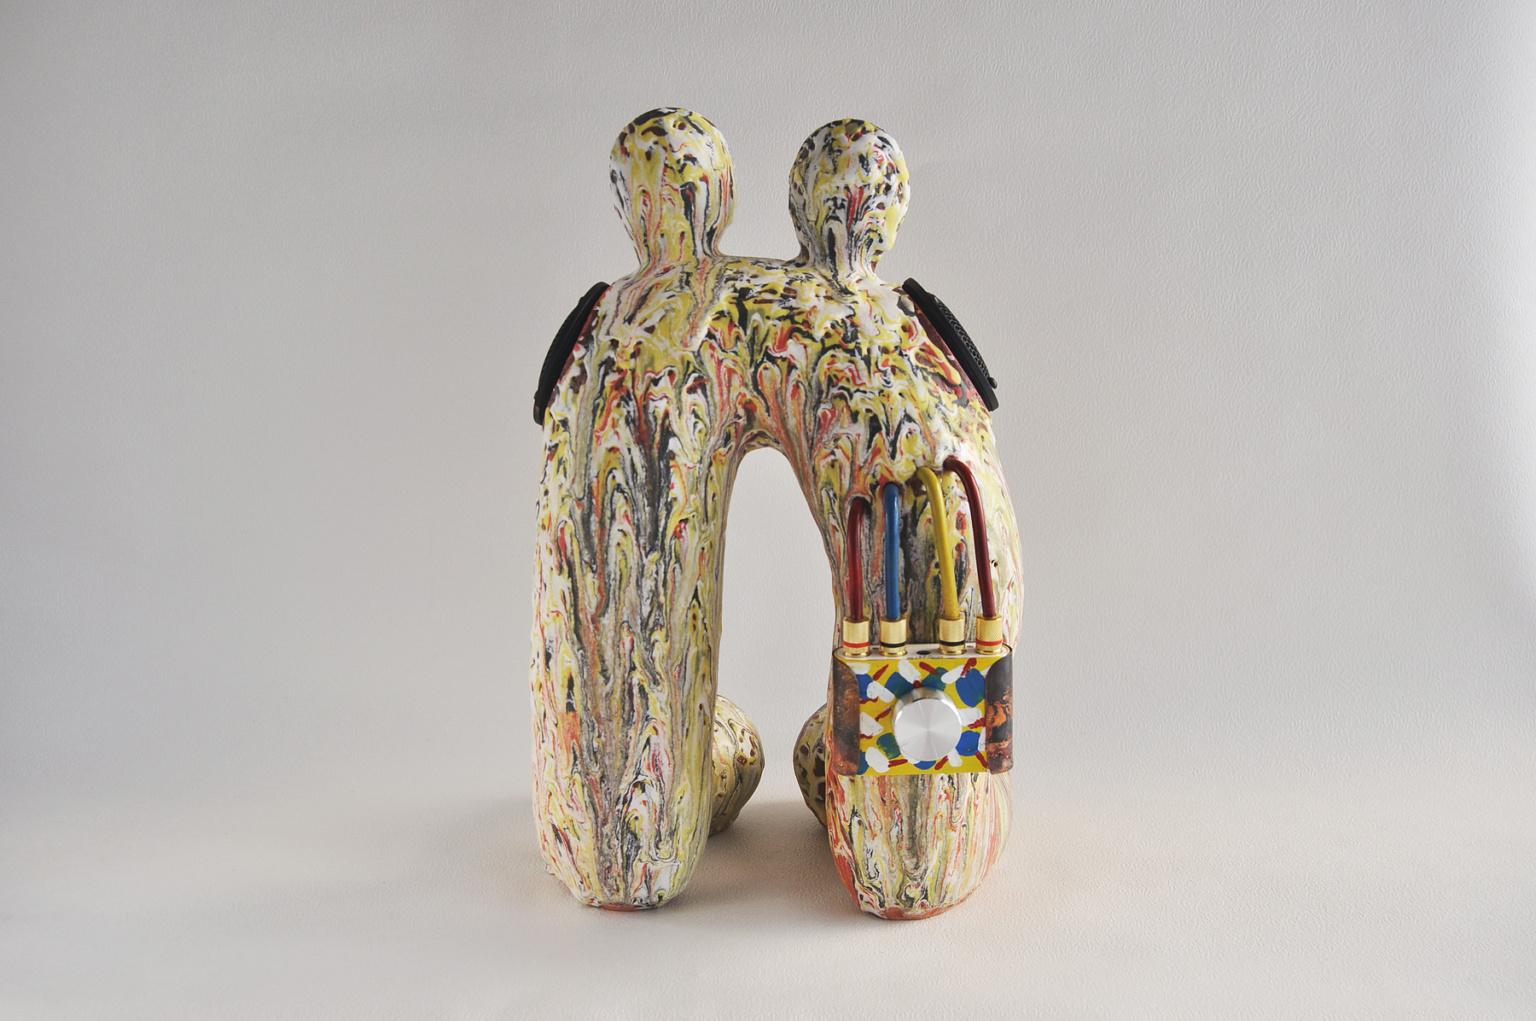 Une enceinte en céramique (bluetooth/cordon) de l'artiste japonais Hiroyuki Yamada.

Hiroyuki Yamada (né en 1970, Hyogo Pref., Japon). M. Yamada expose activement ses œuvres depuis le début des années 1990, ce qui lui a valu une attention